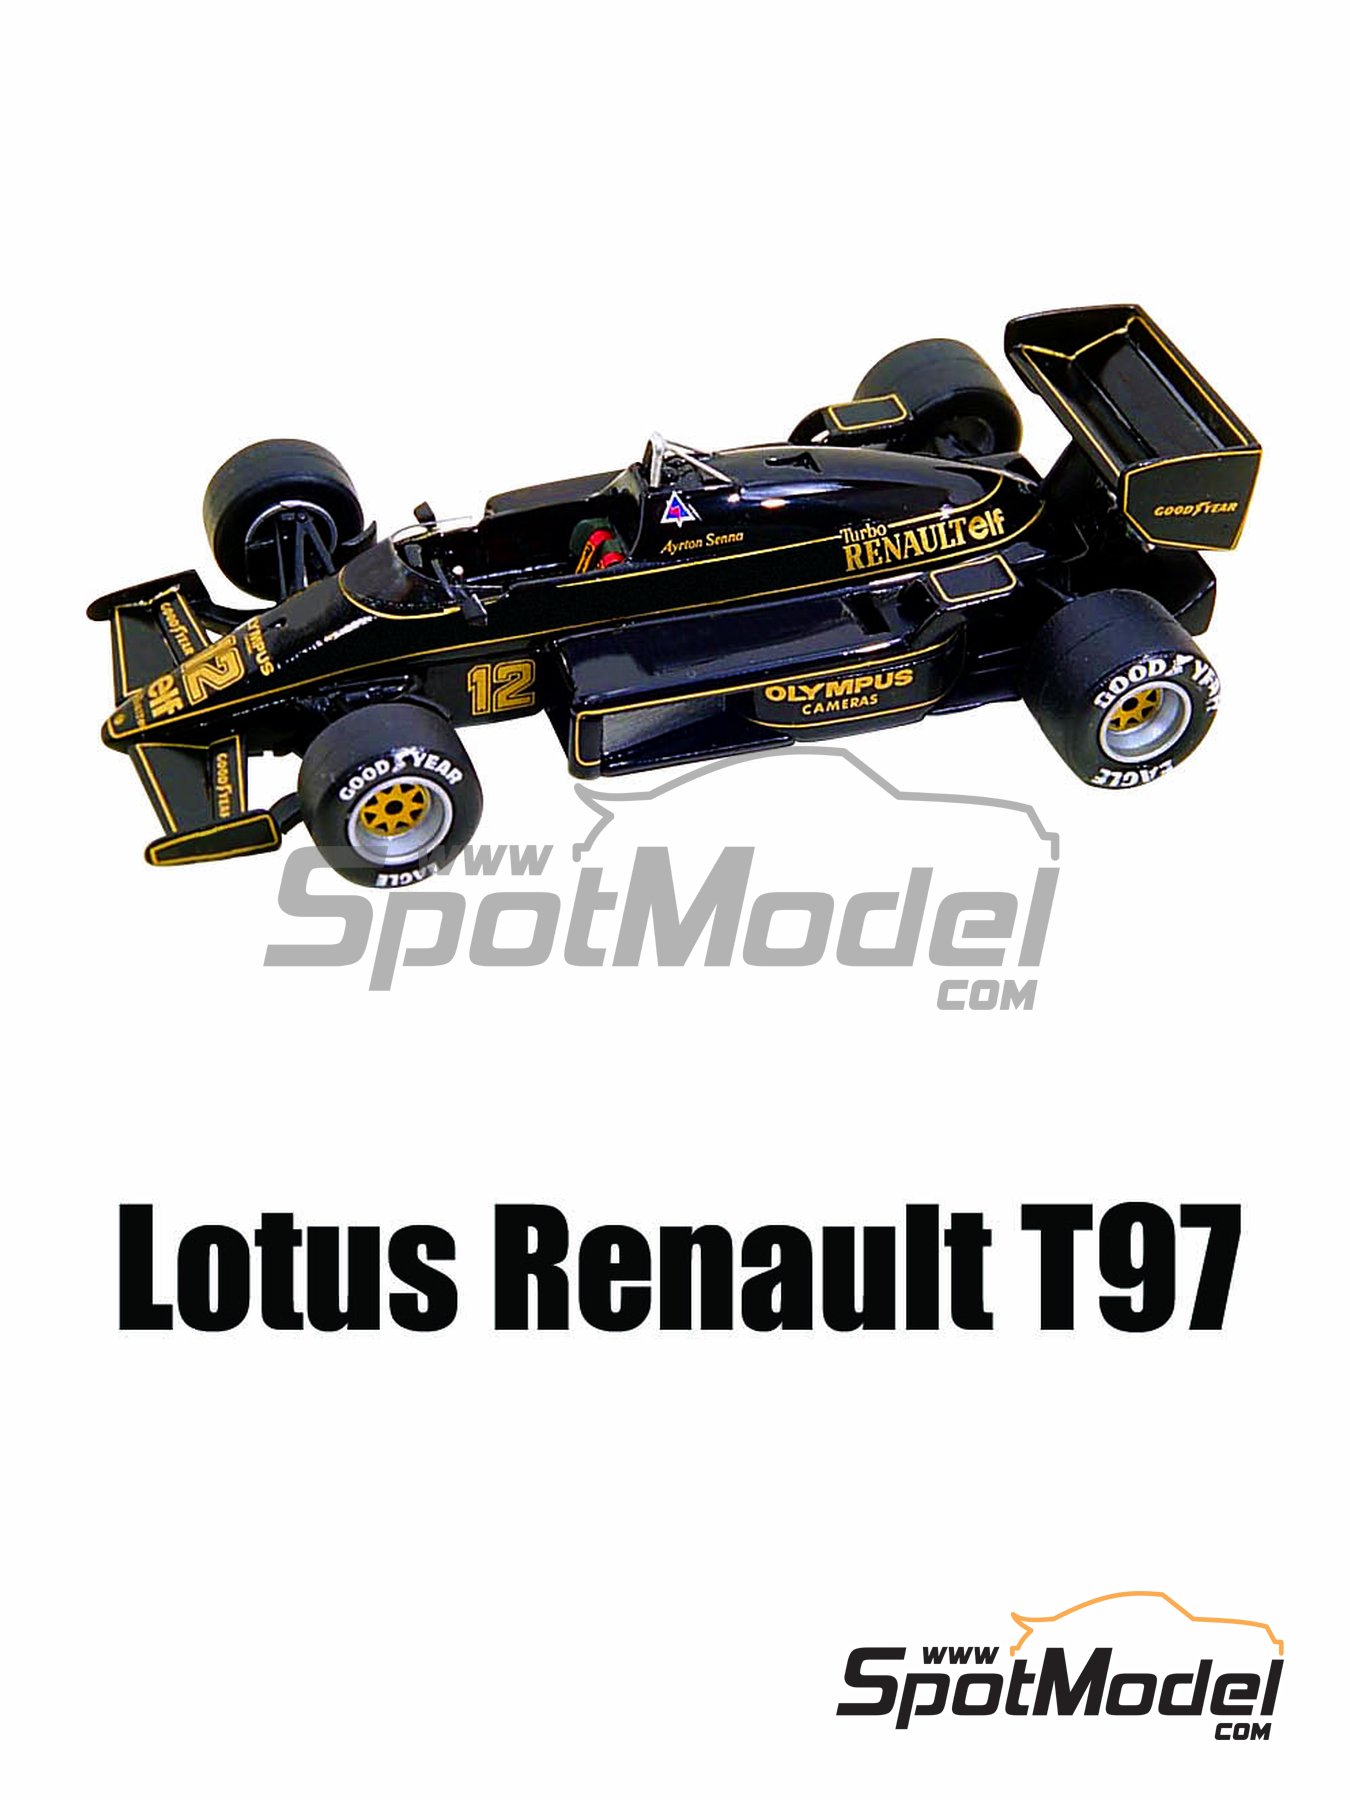 Lotus Renault 97T Ayrton Senna 1985 1/43 